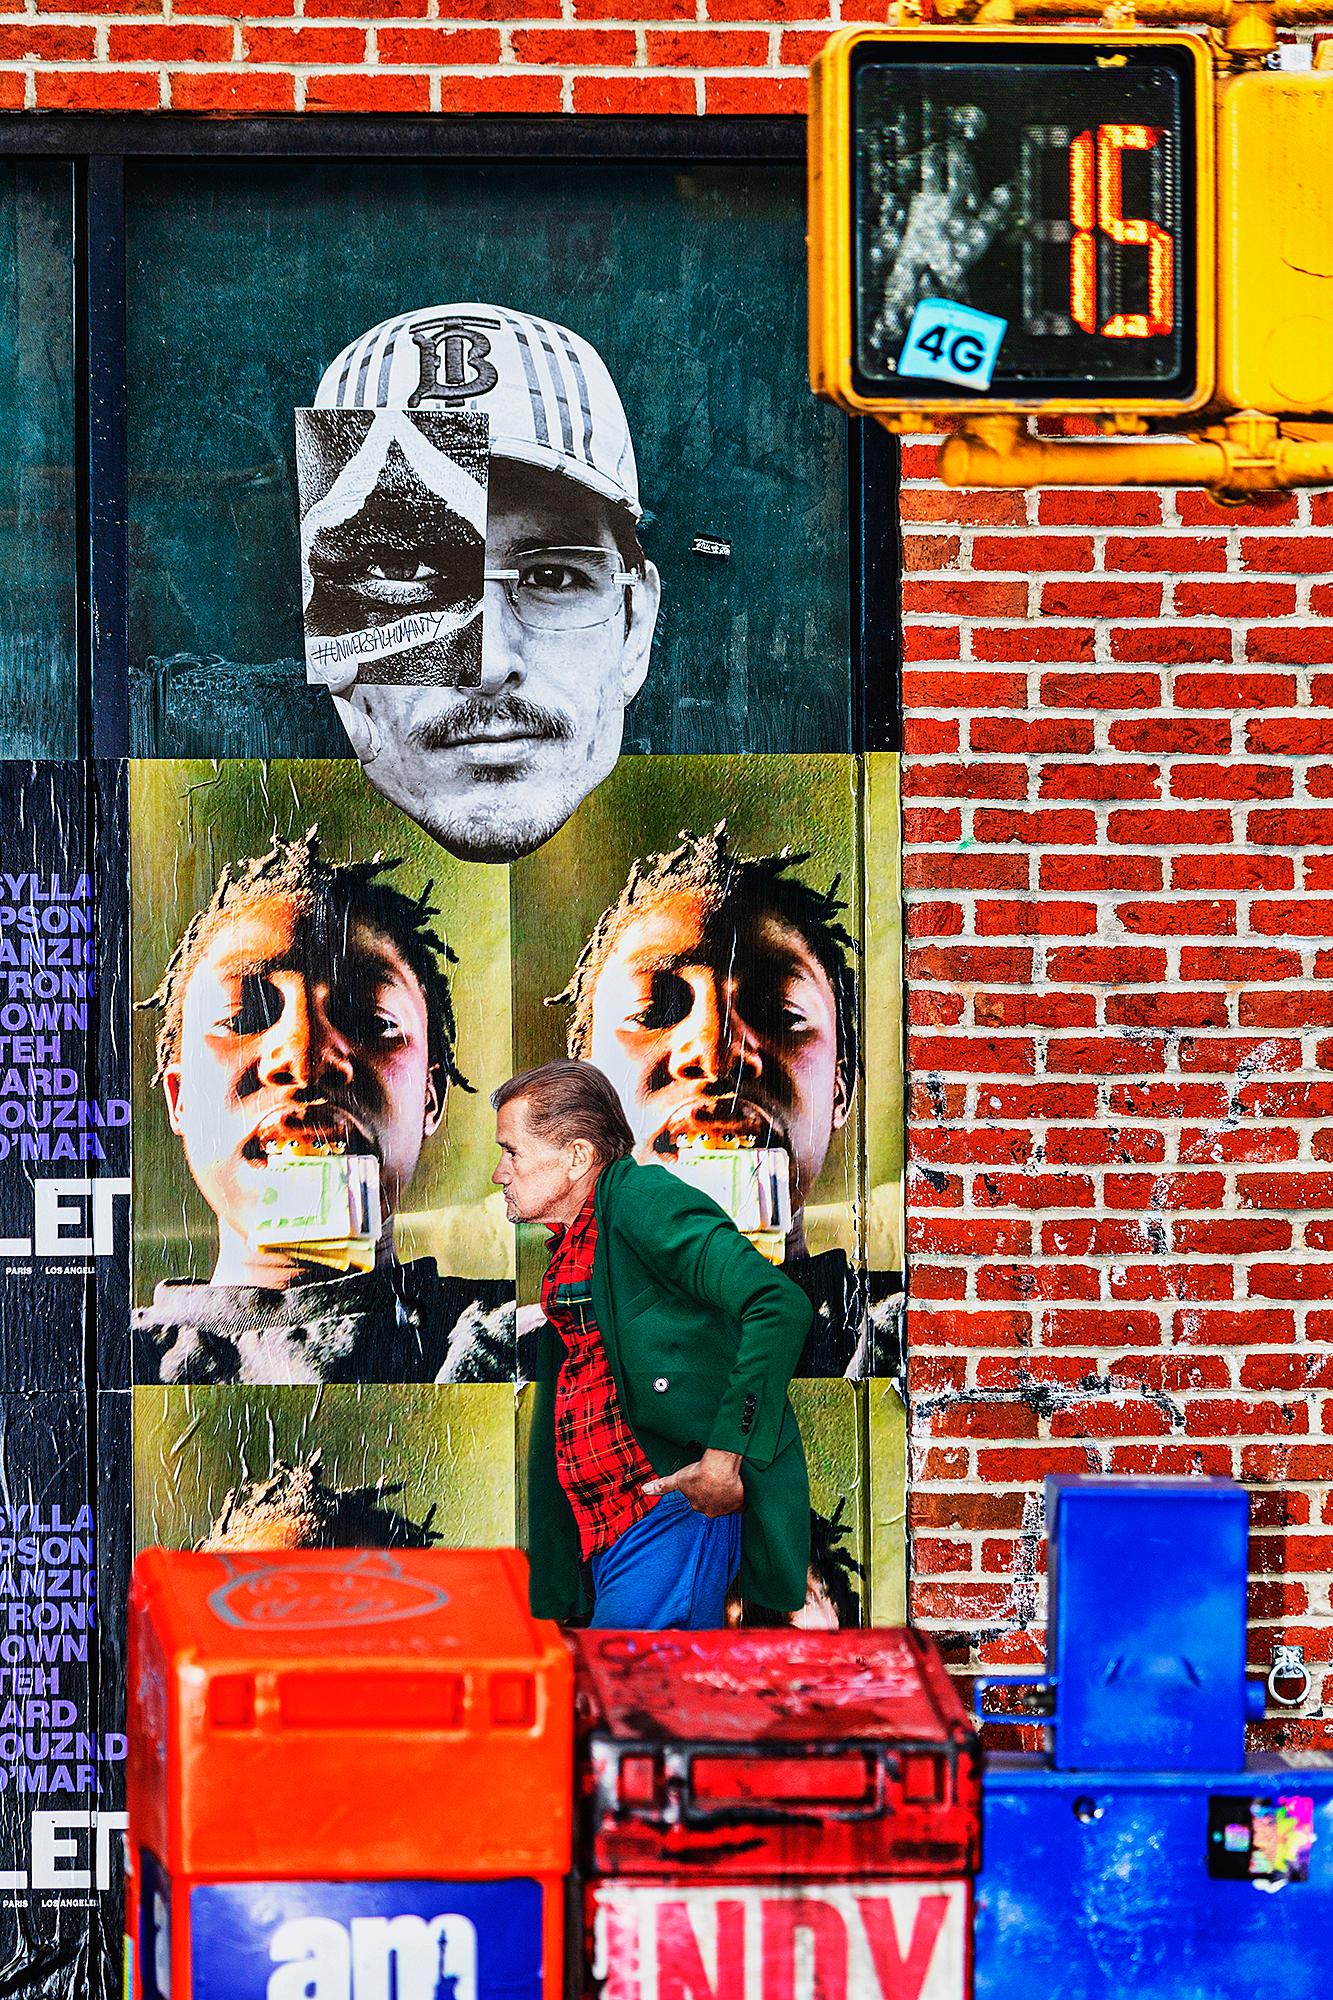 Mitchell Funk Figurative Photograph – Gritty Street Photography mit geometrischen Billboards Manhattan Street Scene